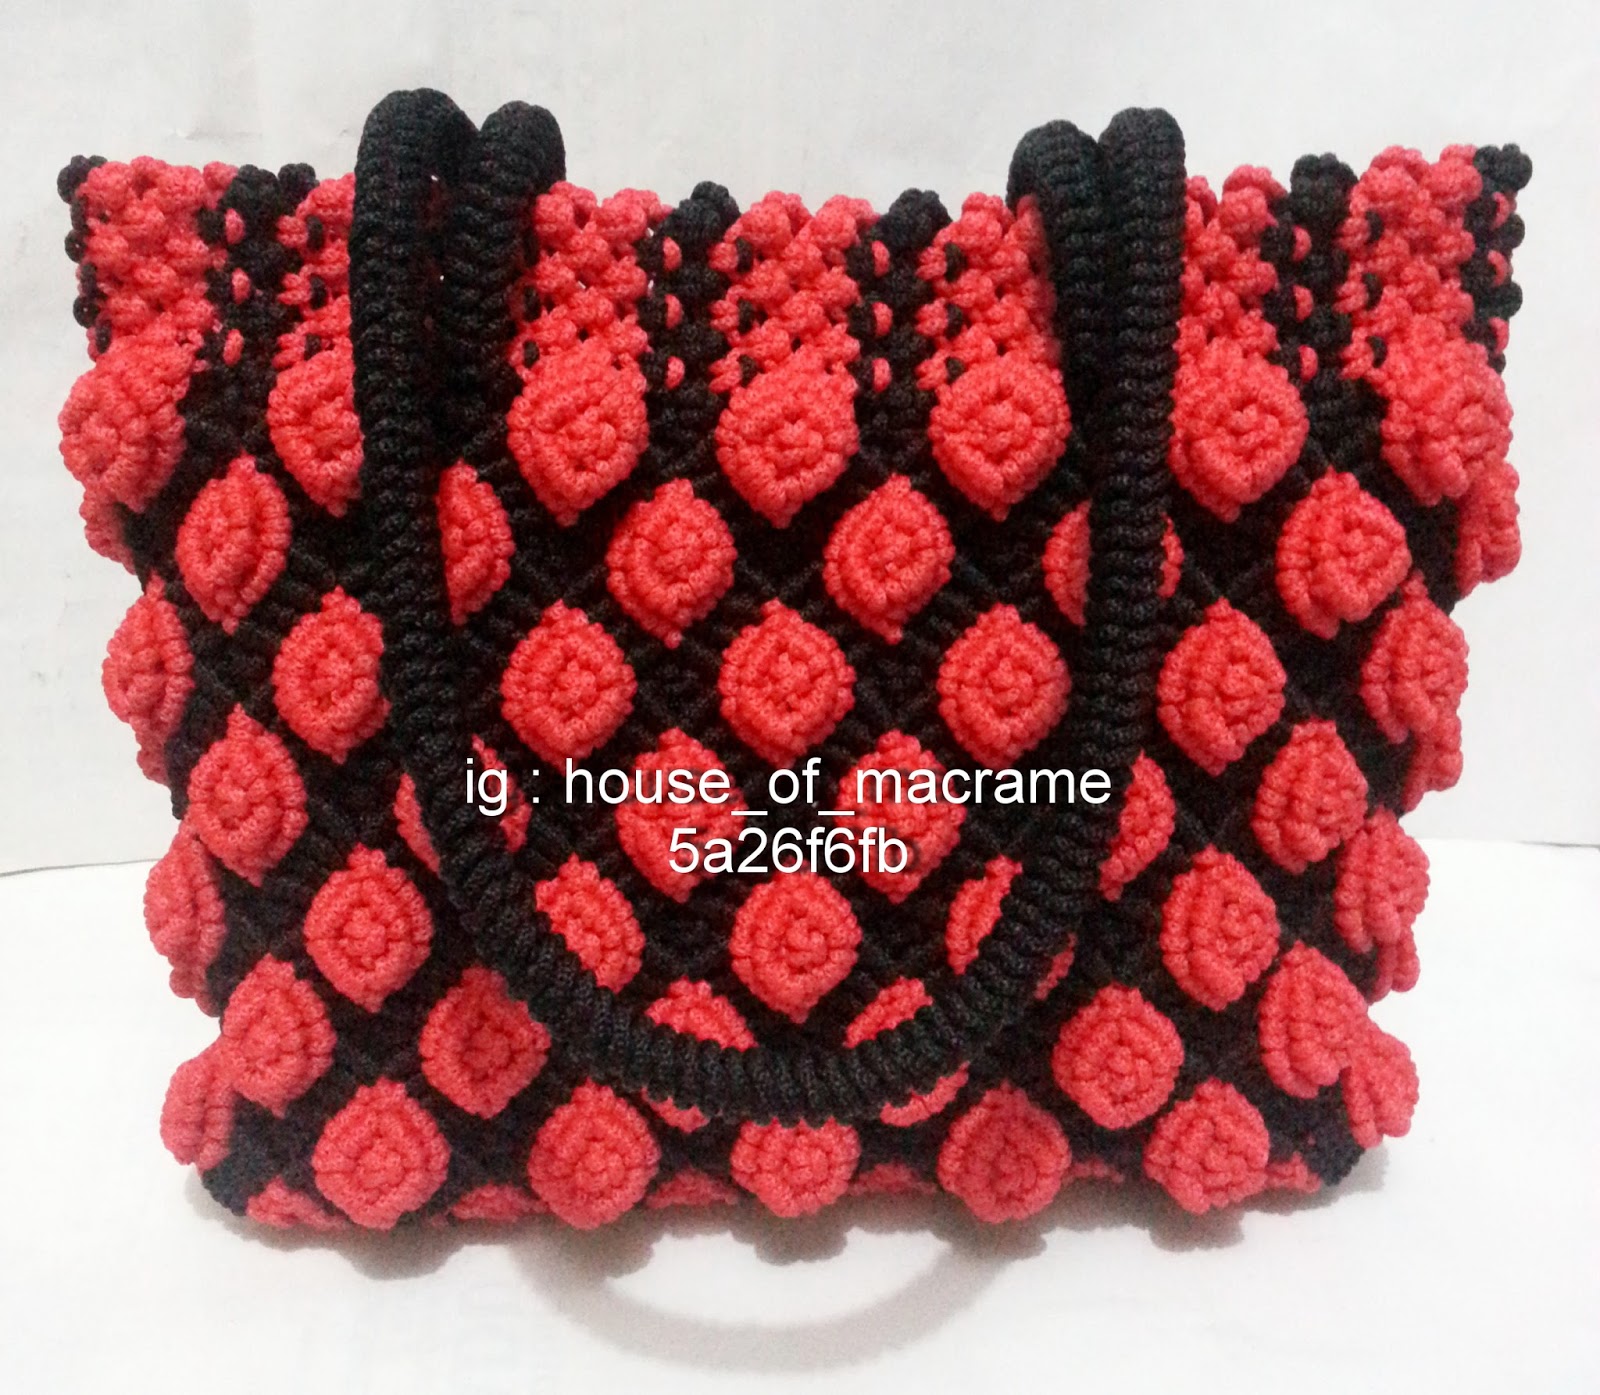 Tas Tali Kur Motif Bunga Mawar Timbul Warna Merah Kombinasi Hitam ZA Galery Macrame And Crochet